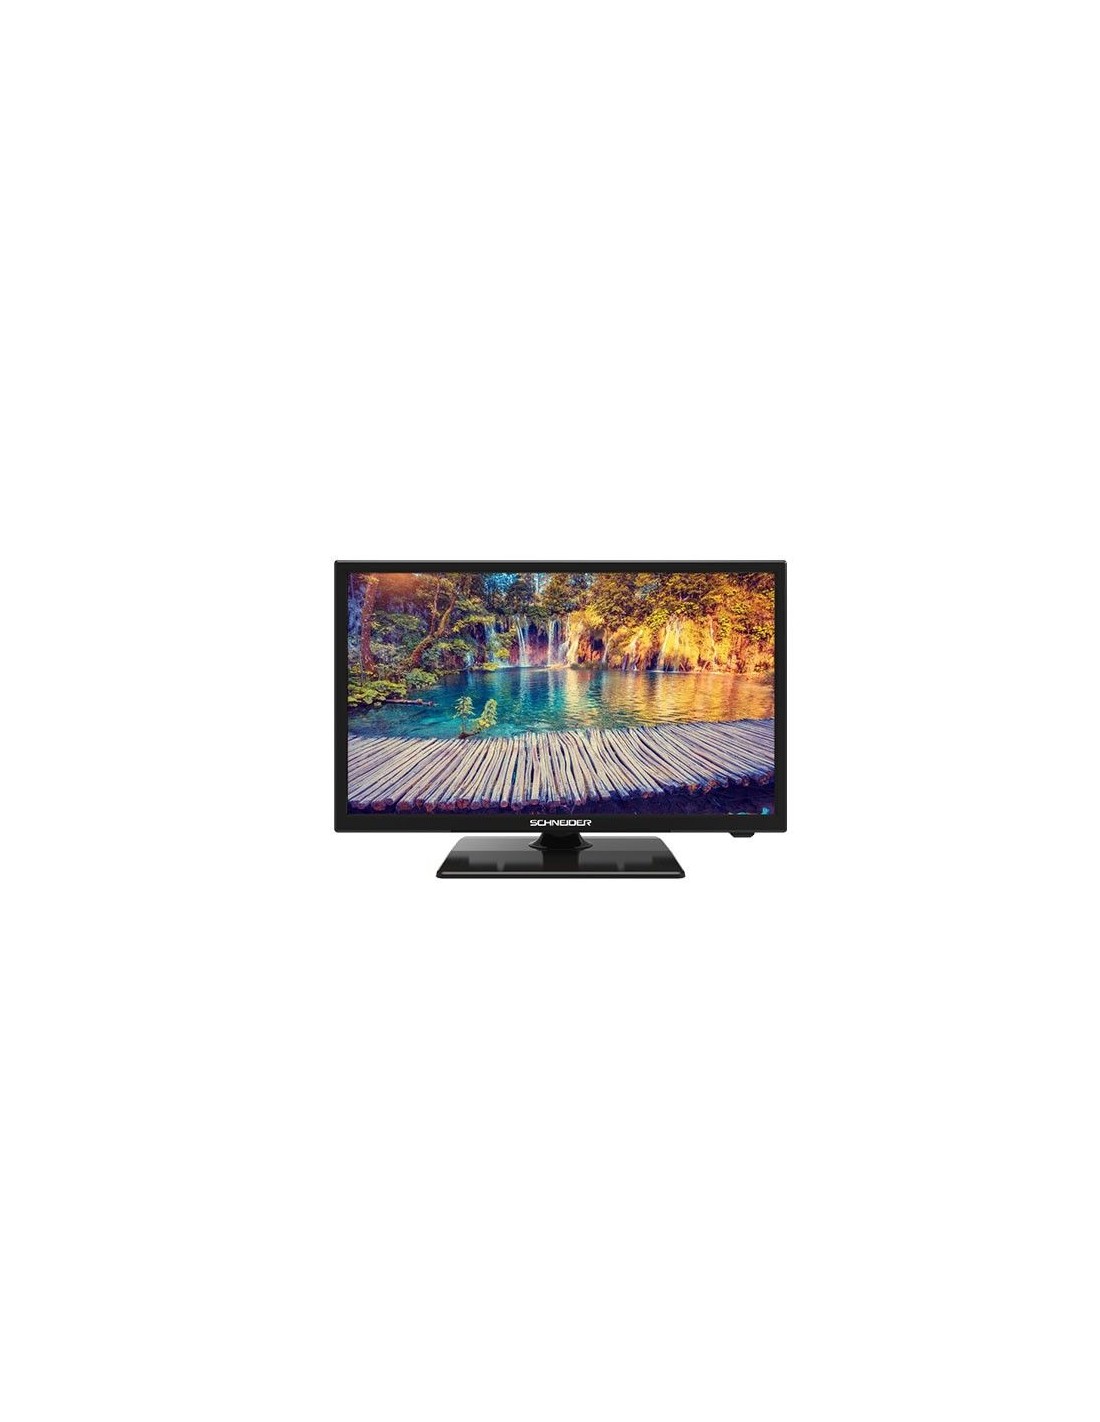 SCHNEIDER CONSUMER TV 22 LED HD USB DVR 12V HDMI Negra 55,9 cm (22) Full  HD Negro